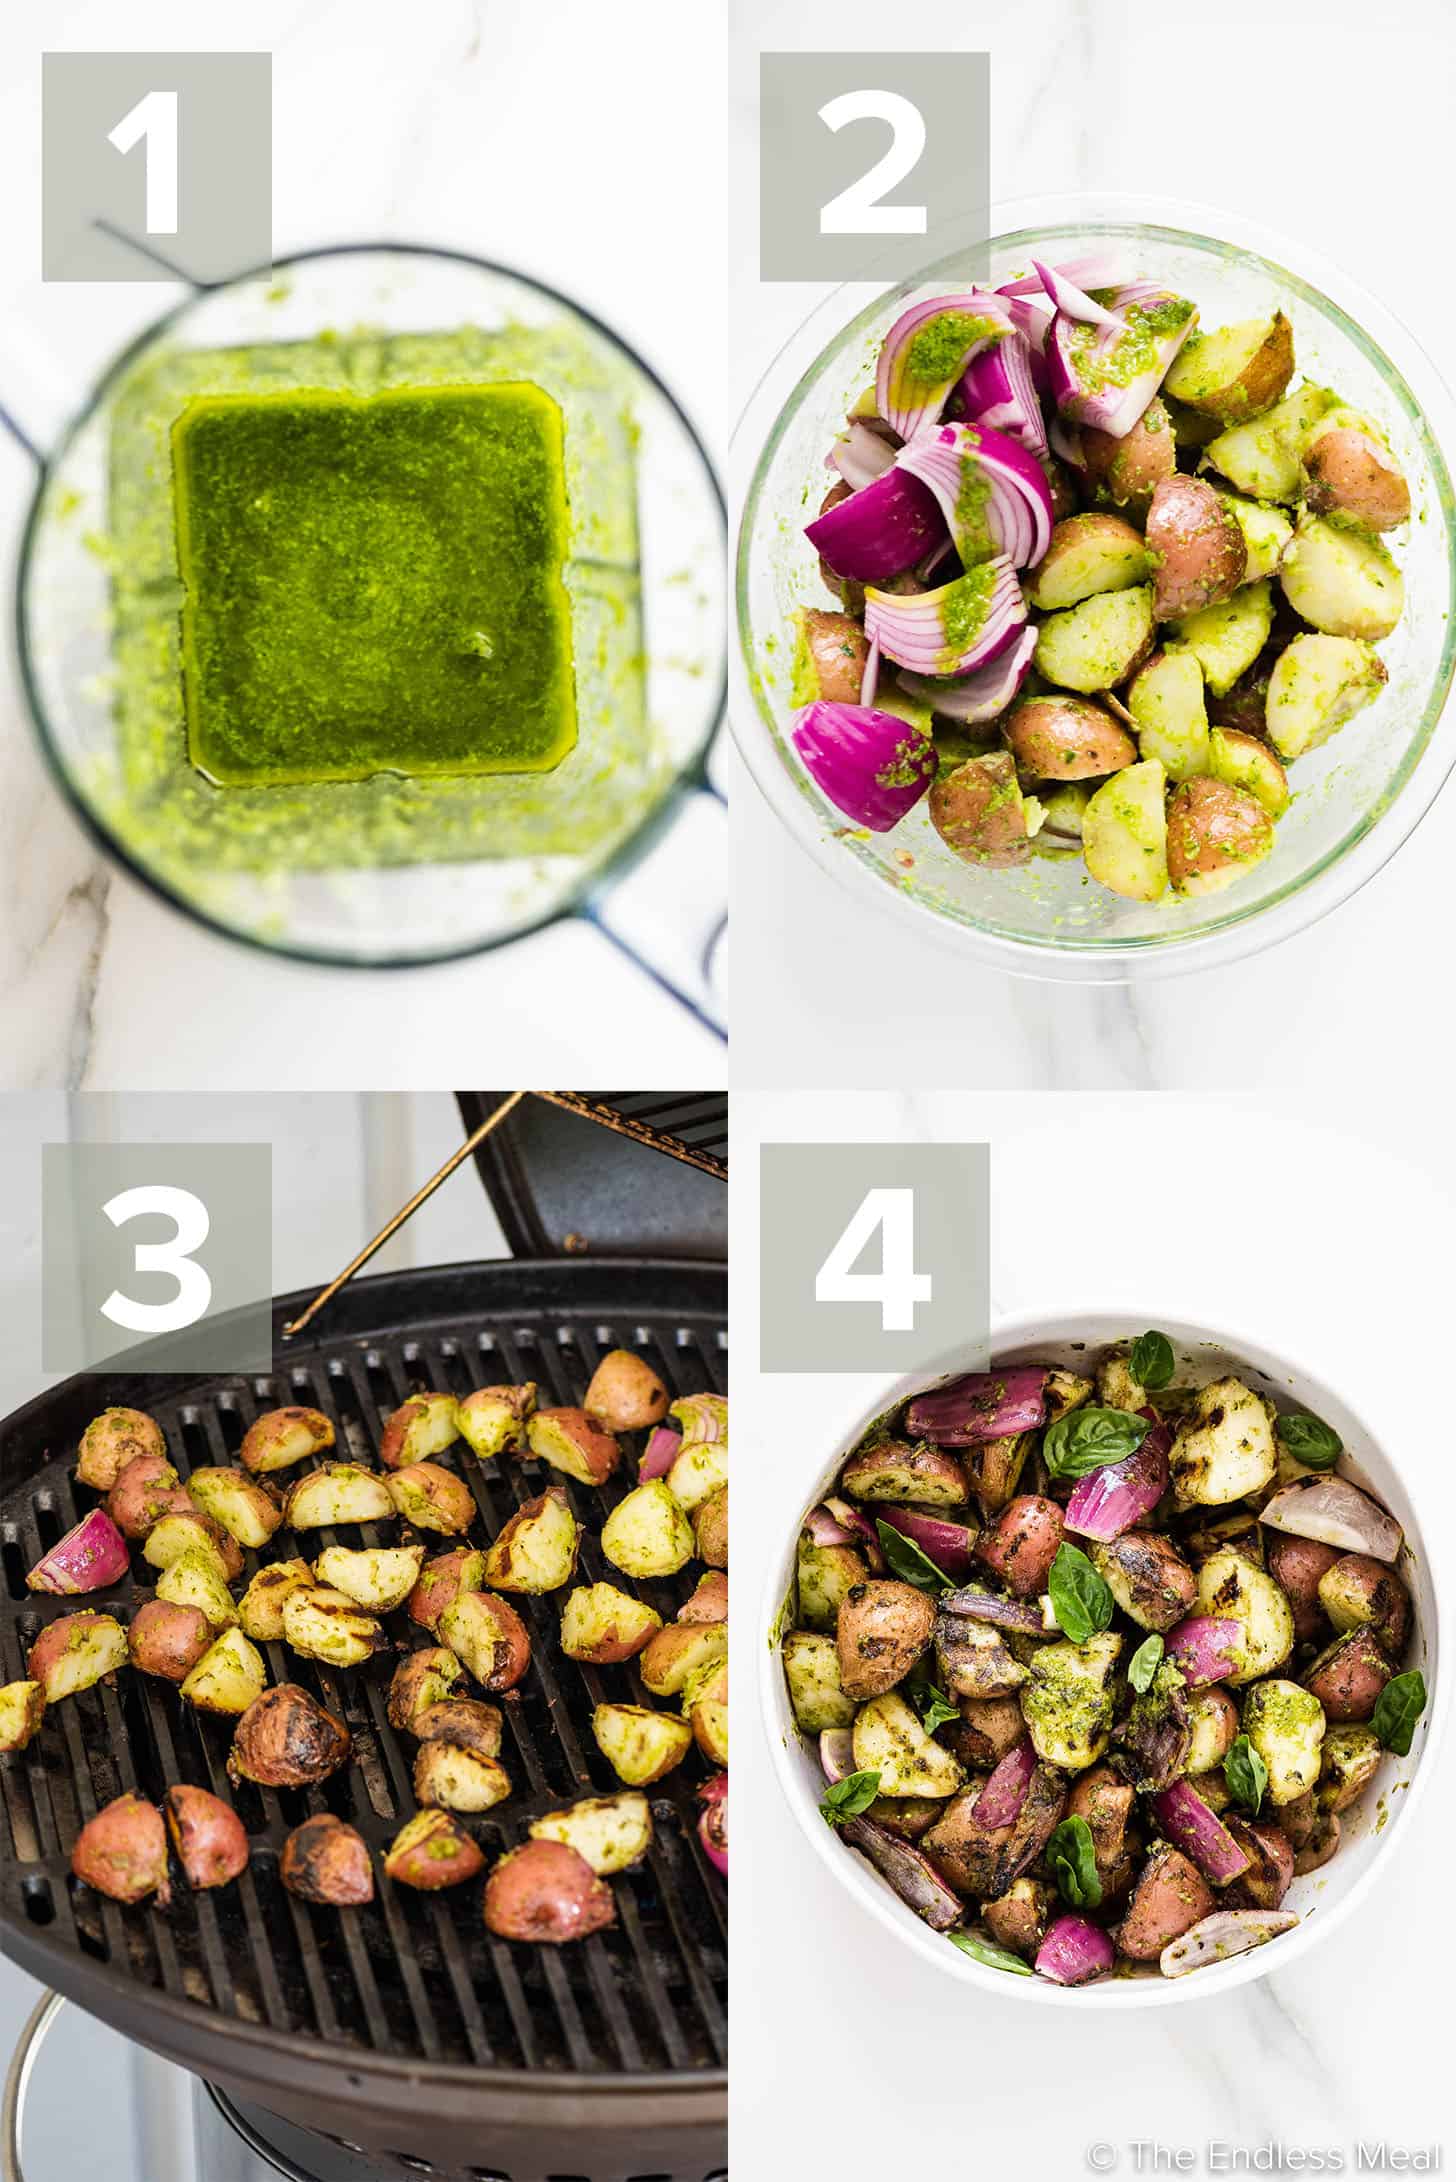 4 immagini che mostrano come preparare l'insalata di patate grigliate